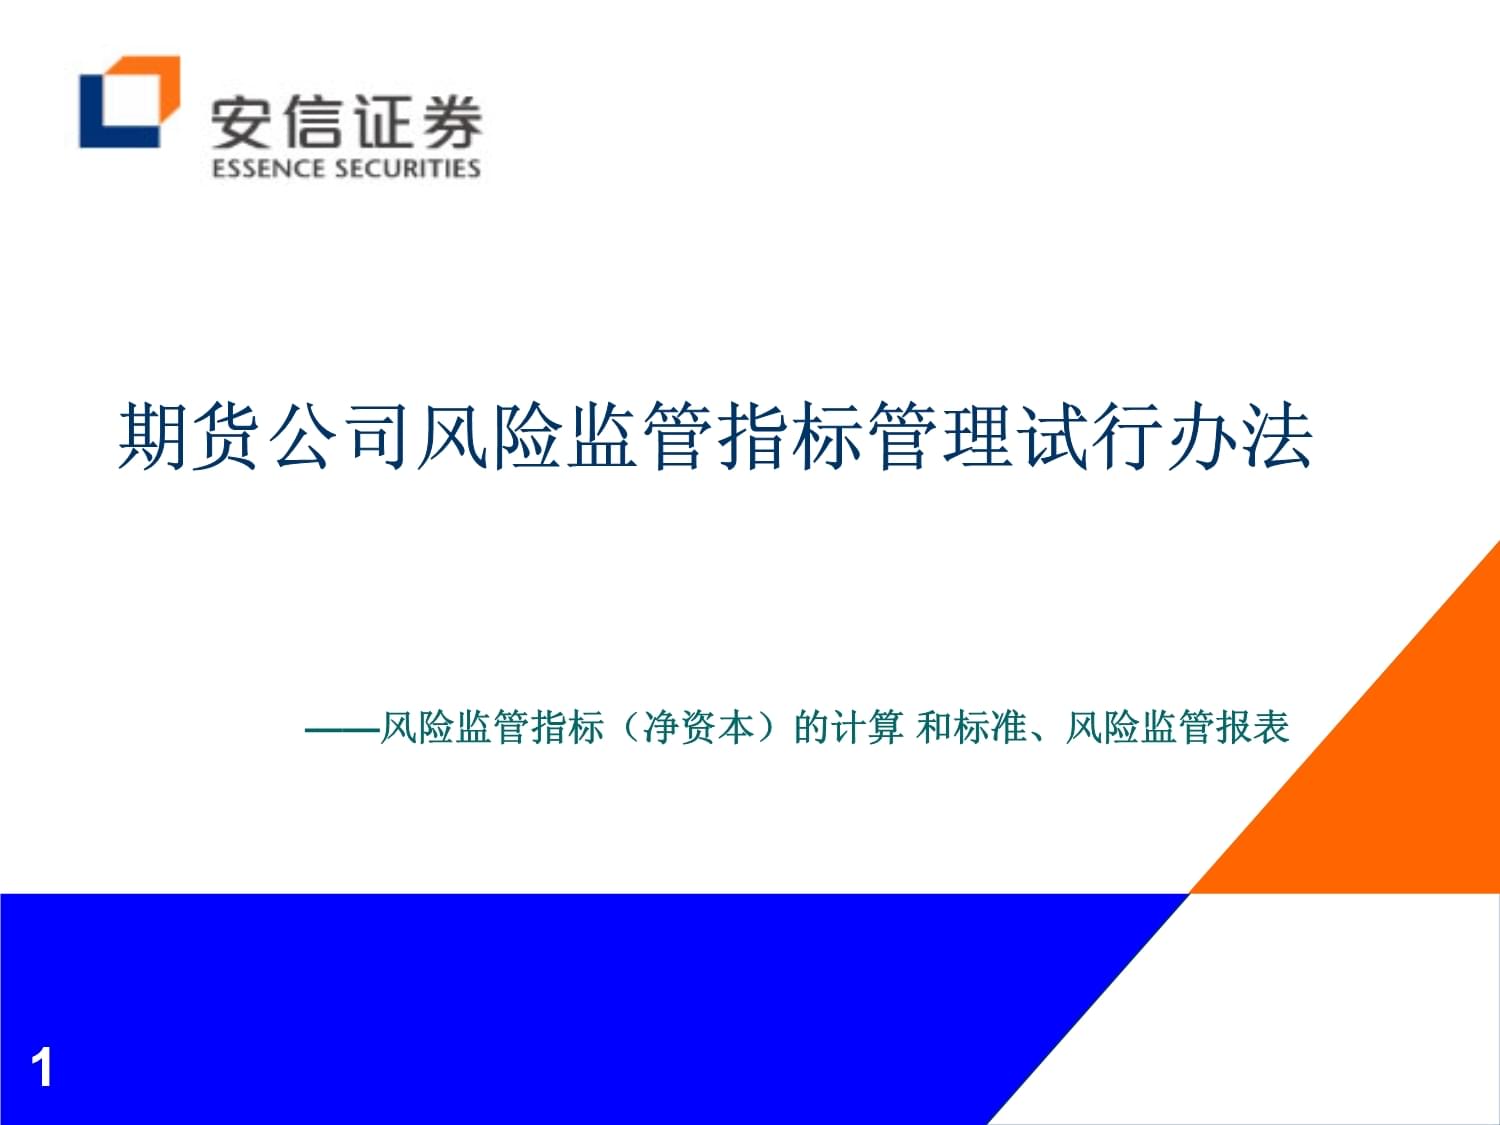 中国领先的内部控制/风险管理解决方案提供商提供商